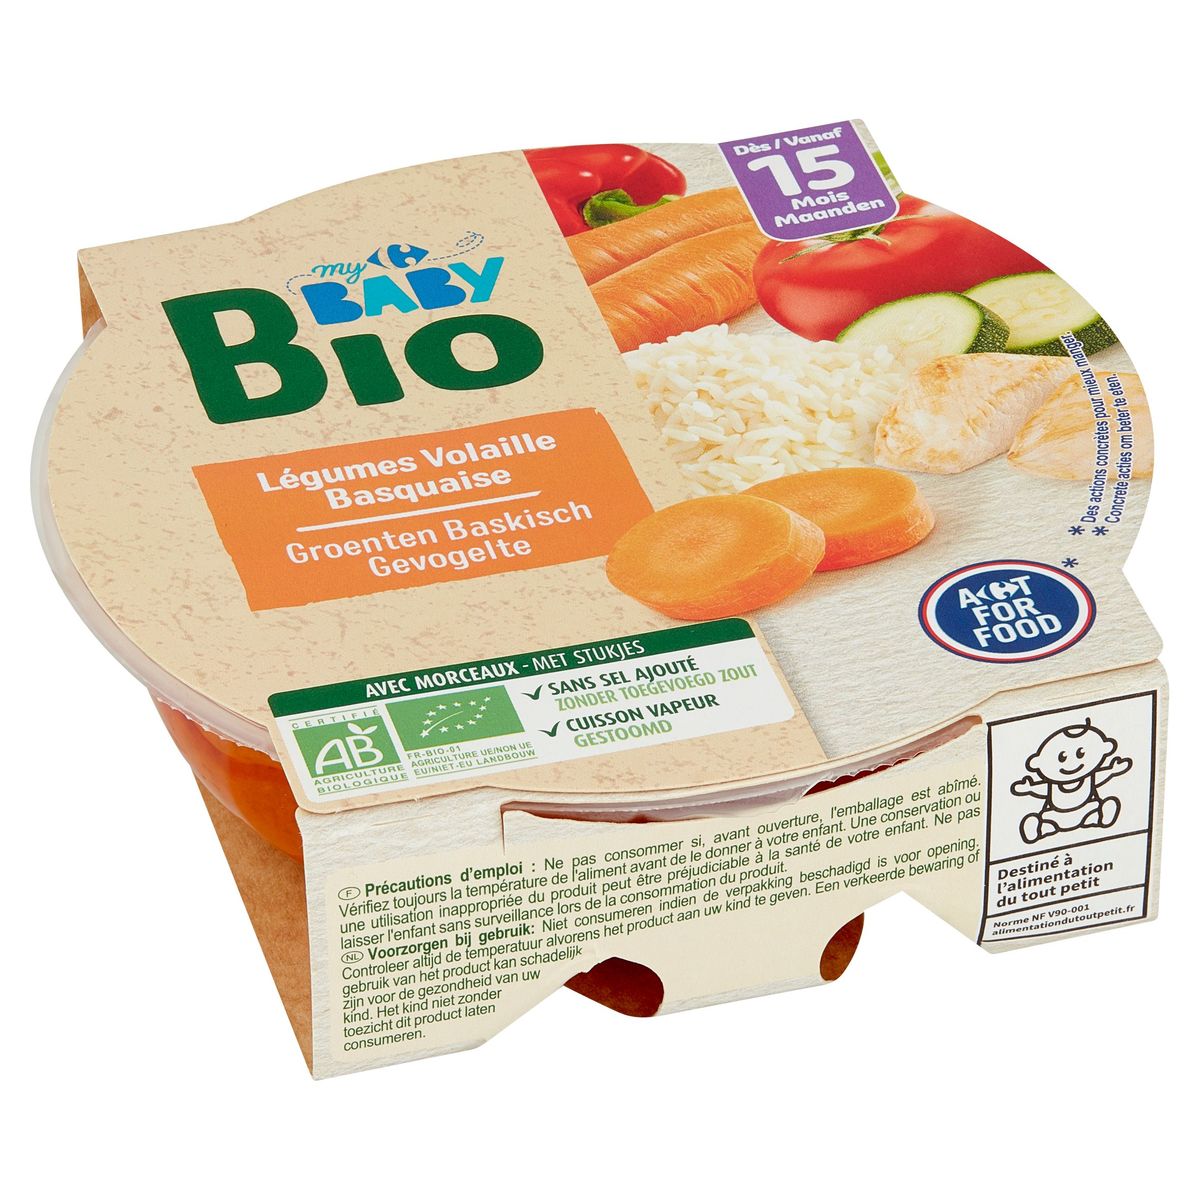 Carrefour Baby Bio Légumes Volaille Basquaise dès 15 Mois 250 g